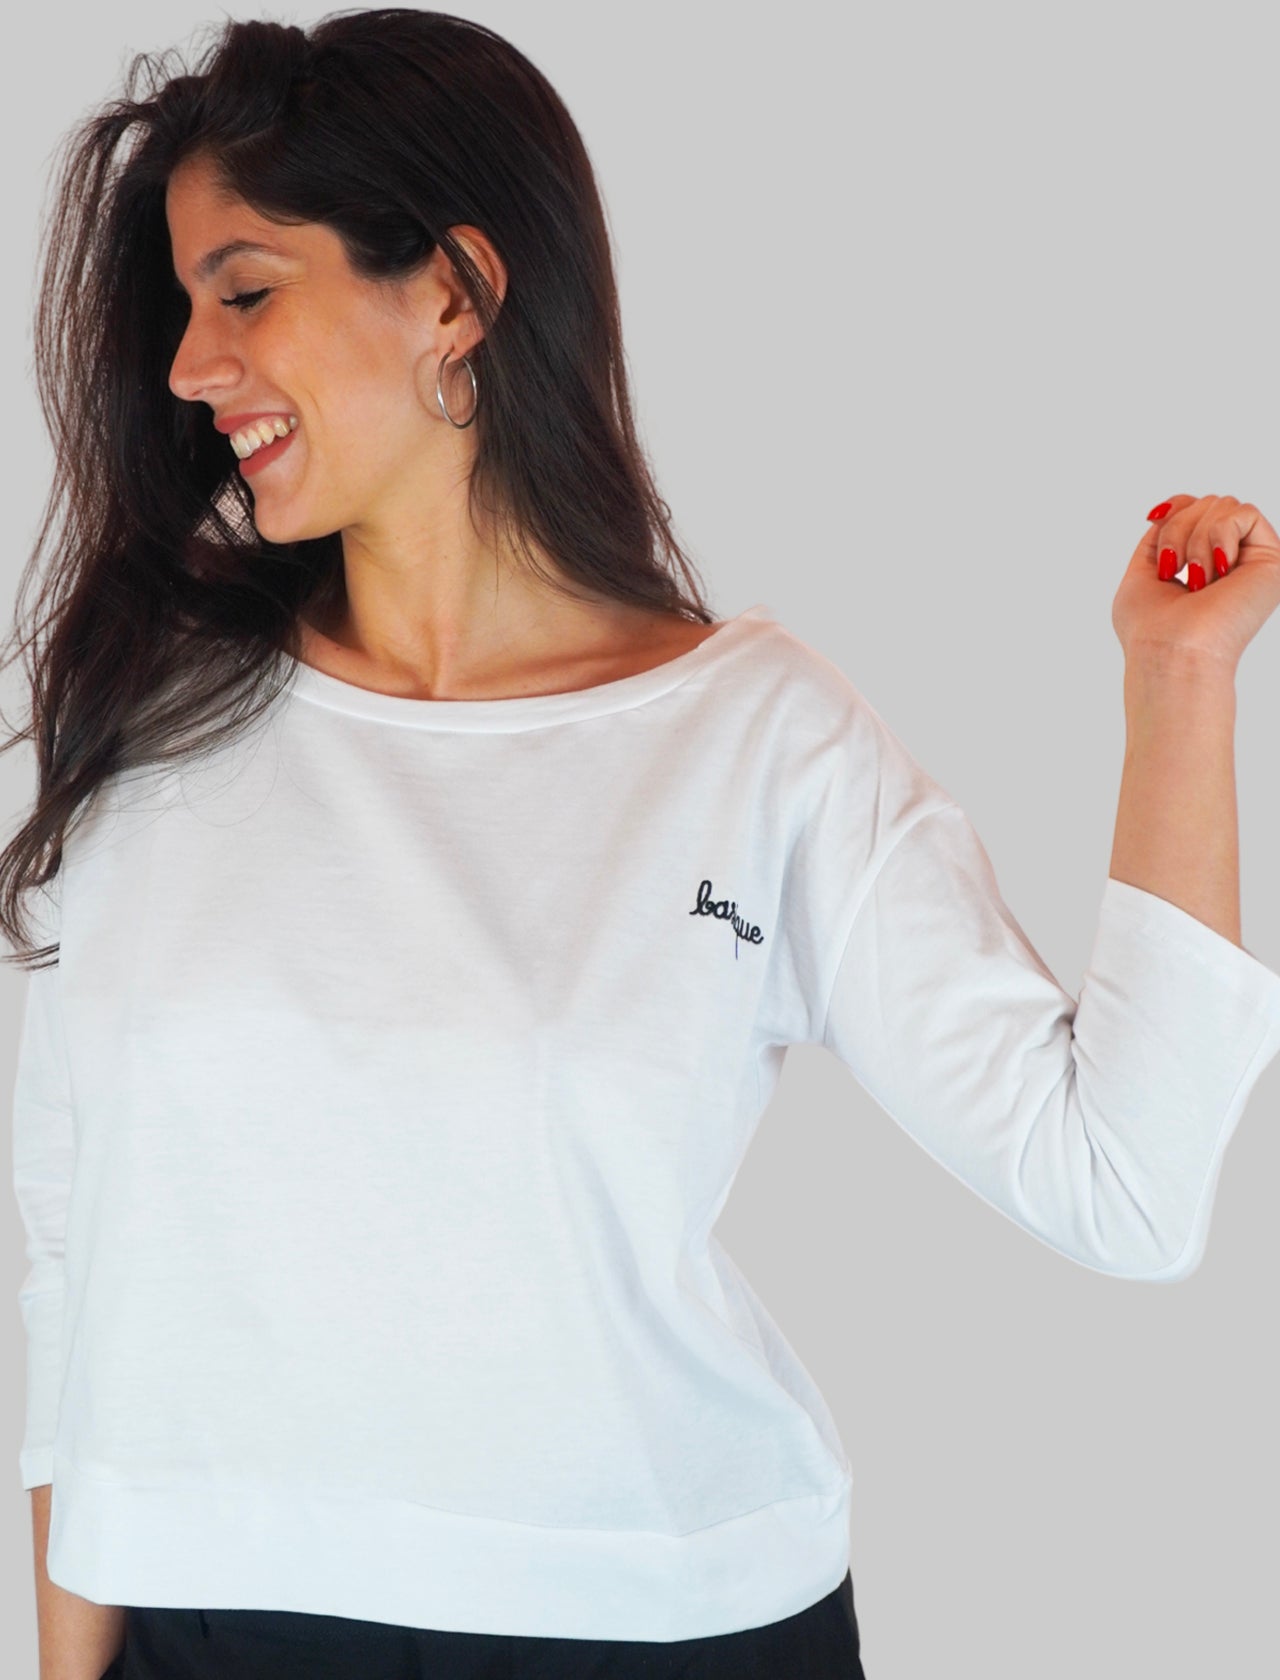 Women's Clothing Basic White Cotton Long Sleeve Shirt